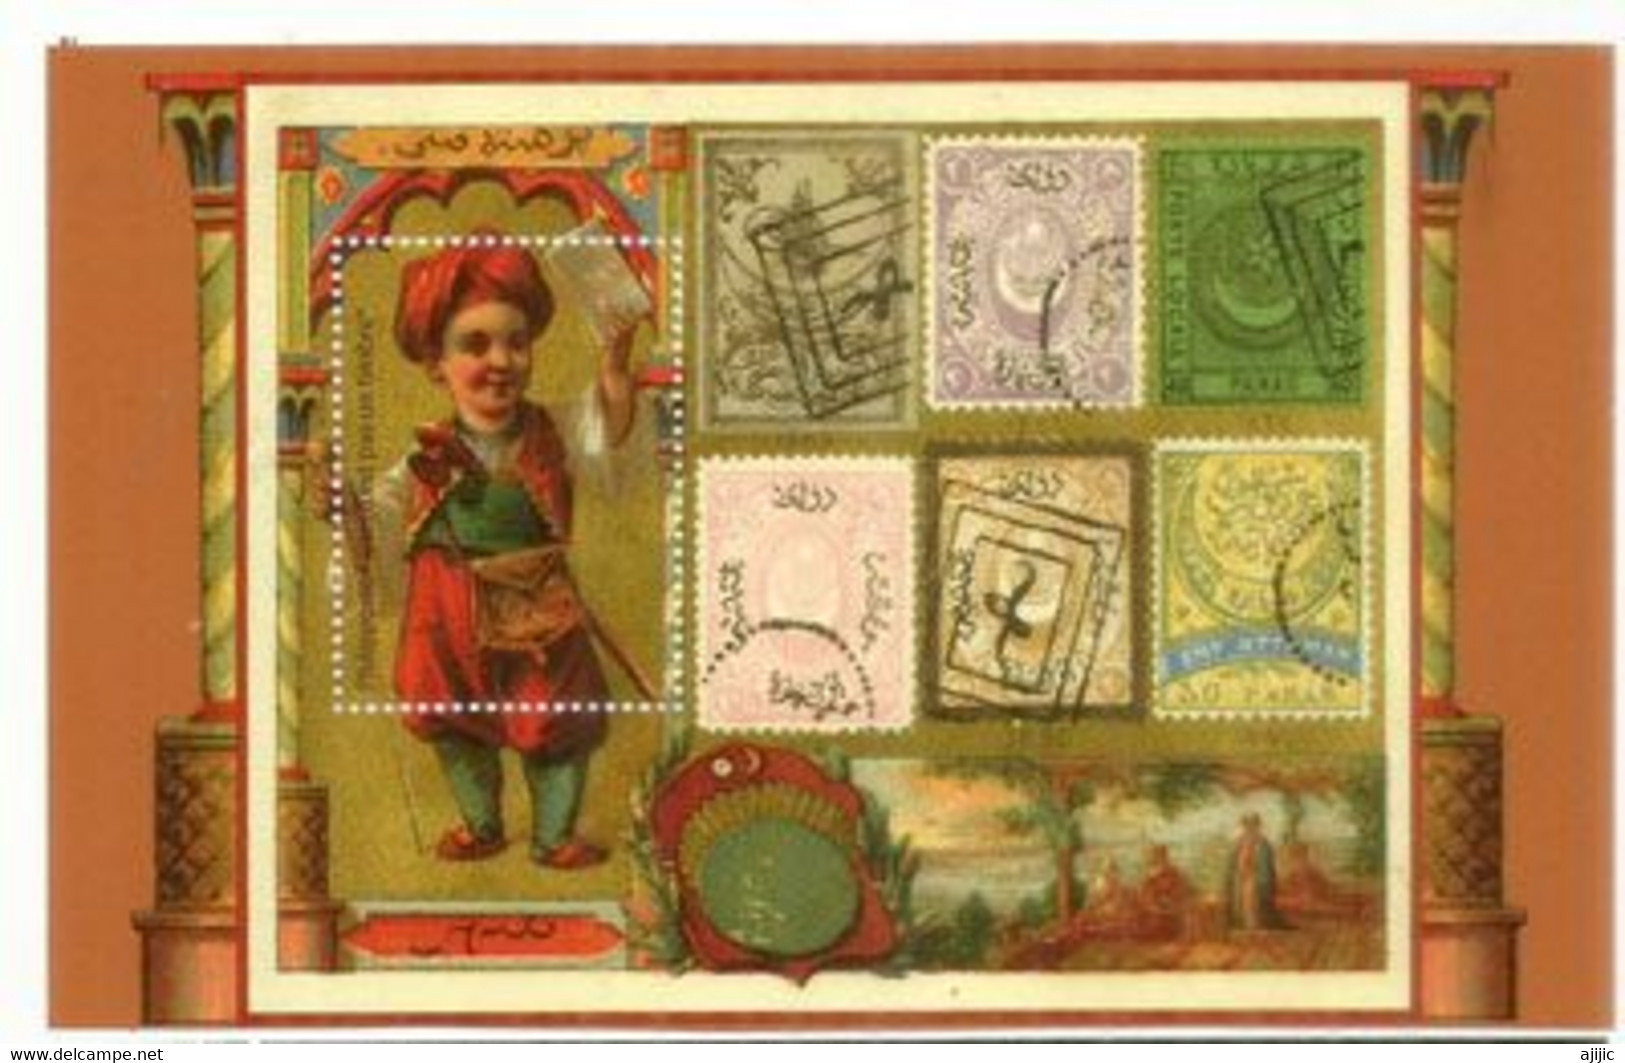 Service Postal France Avec Empire Ottoman  (vignette)   Postdienst Frankreich Mit Osmanischem Reich (Vignette) - Unused Stamps